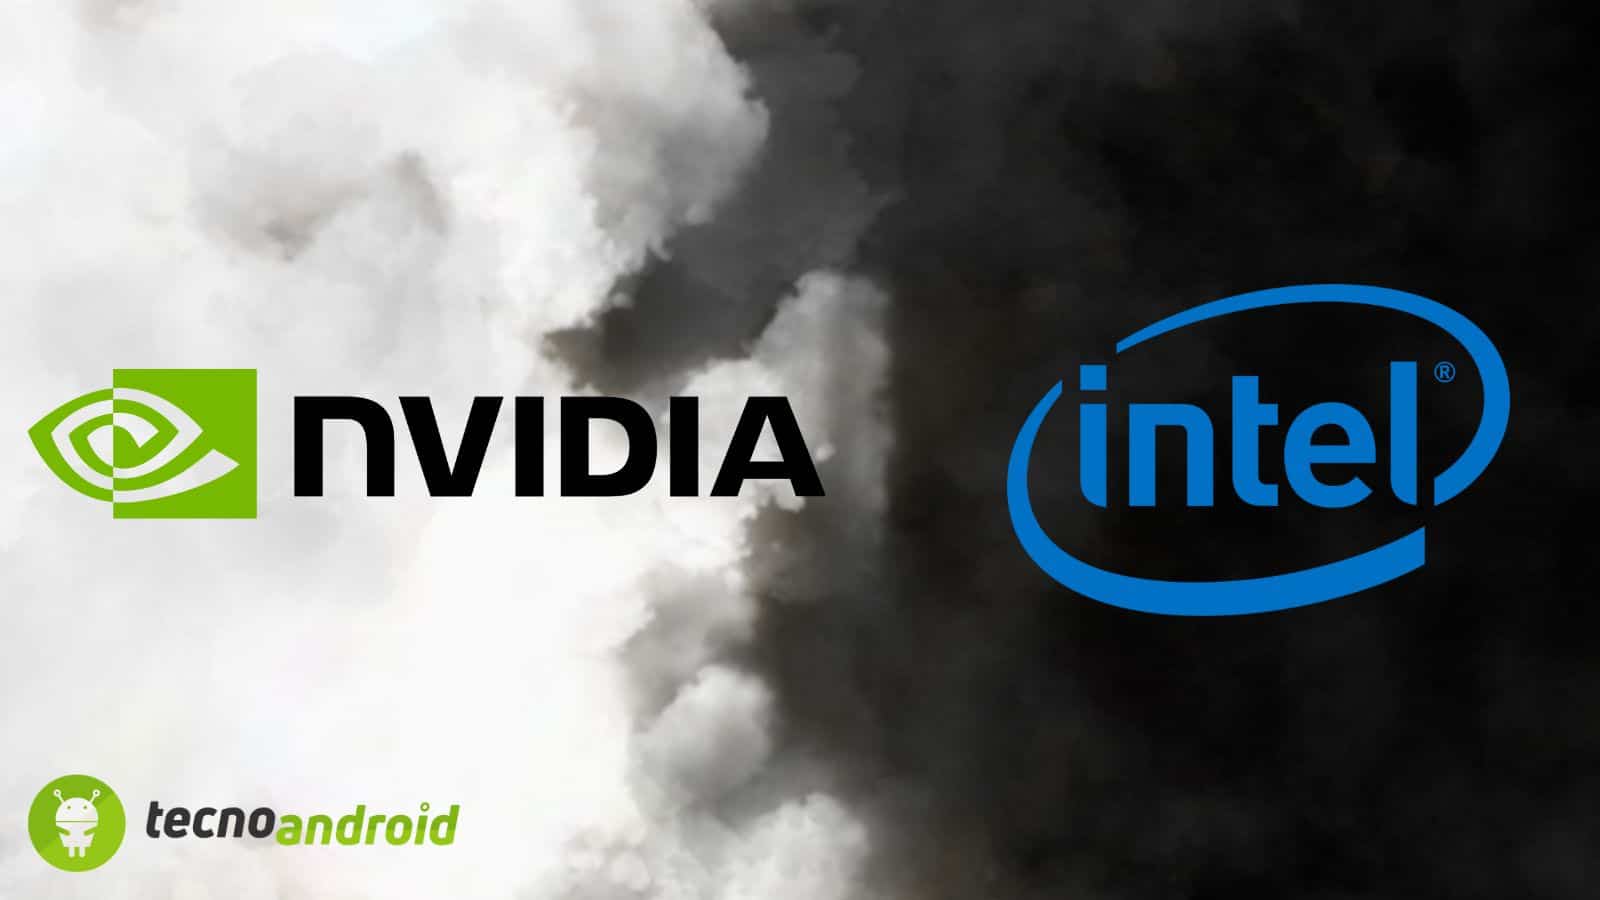 NVIDIA: i problemi di VRAM dipendono da Intel? Scopriamolo